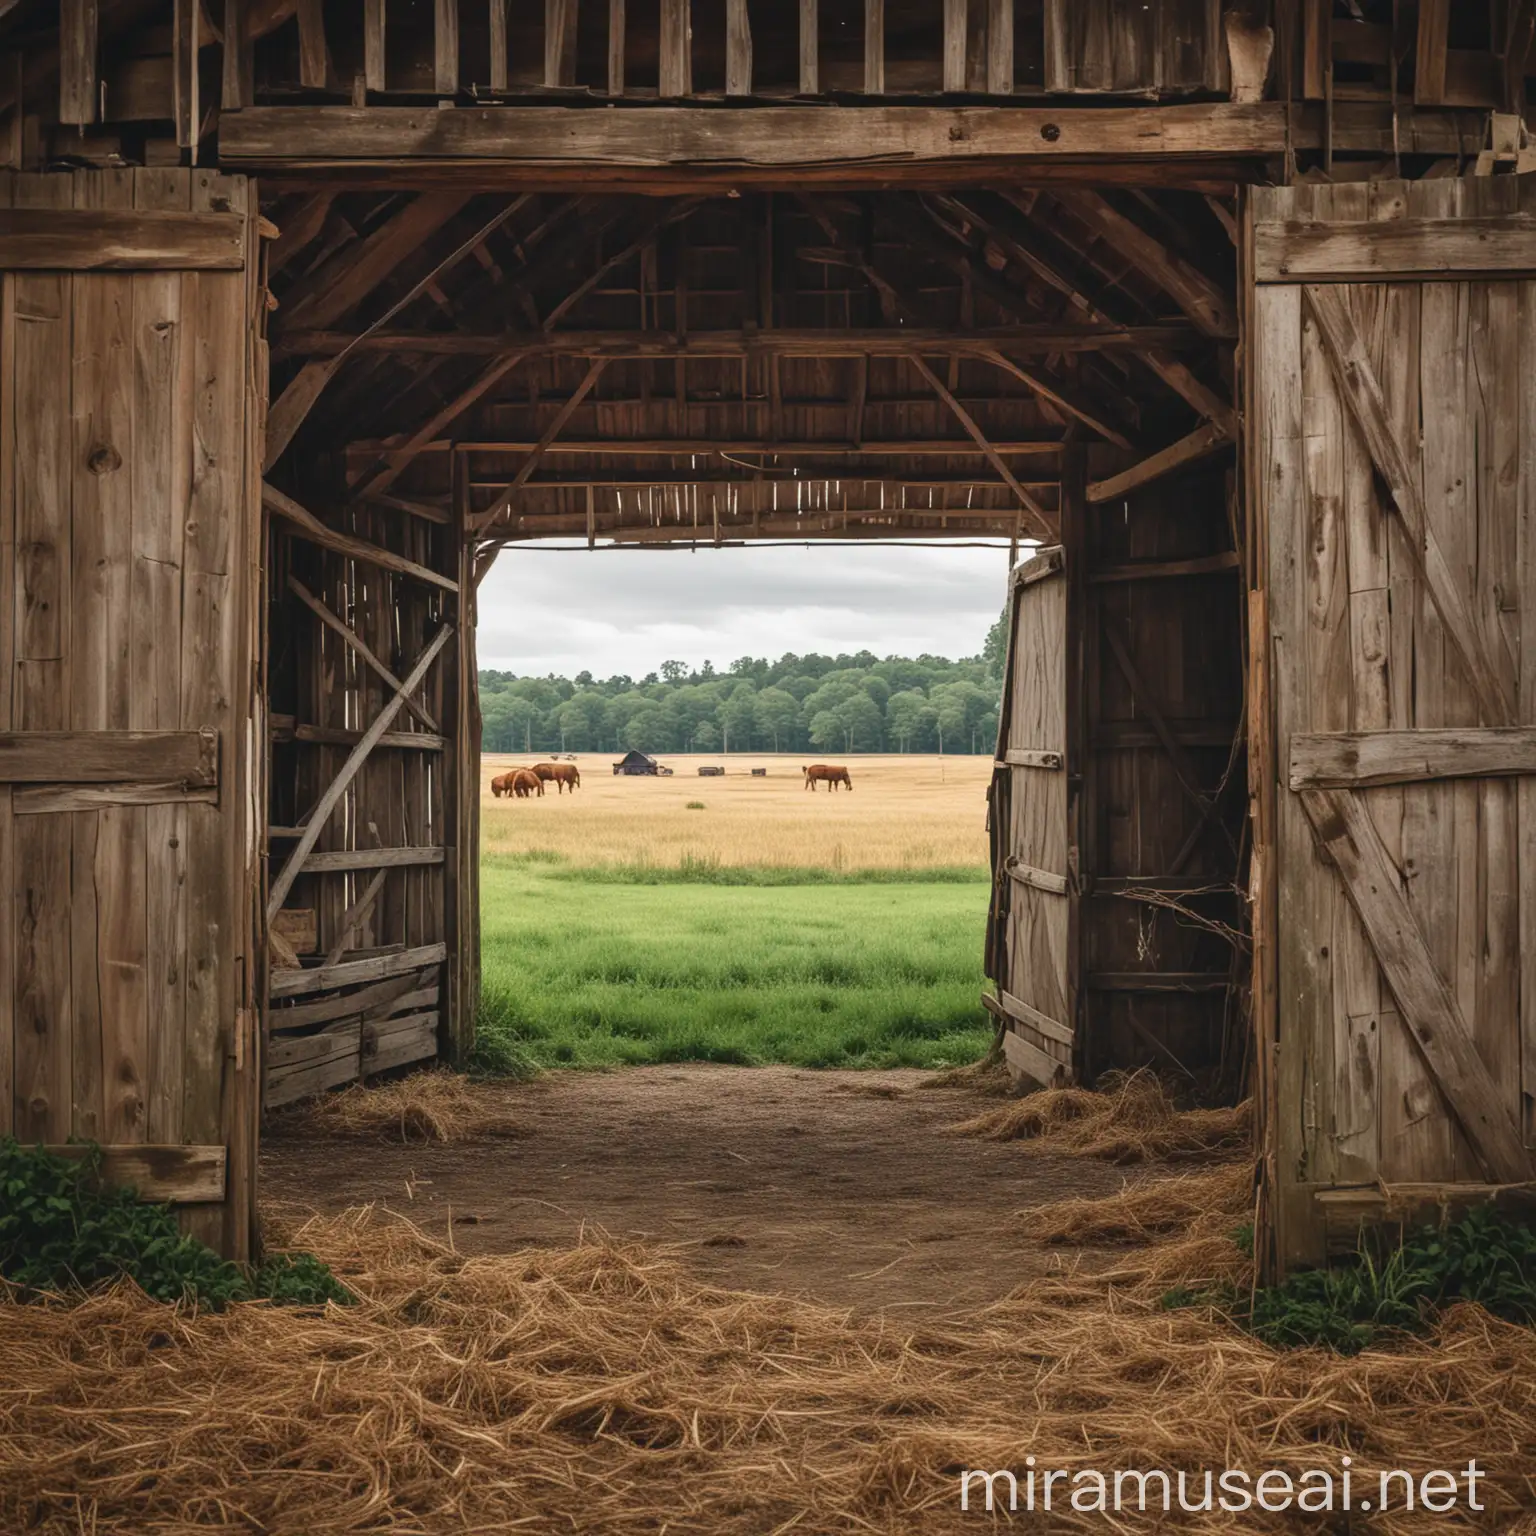 Rural Barn Landscape with Open Doors